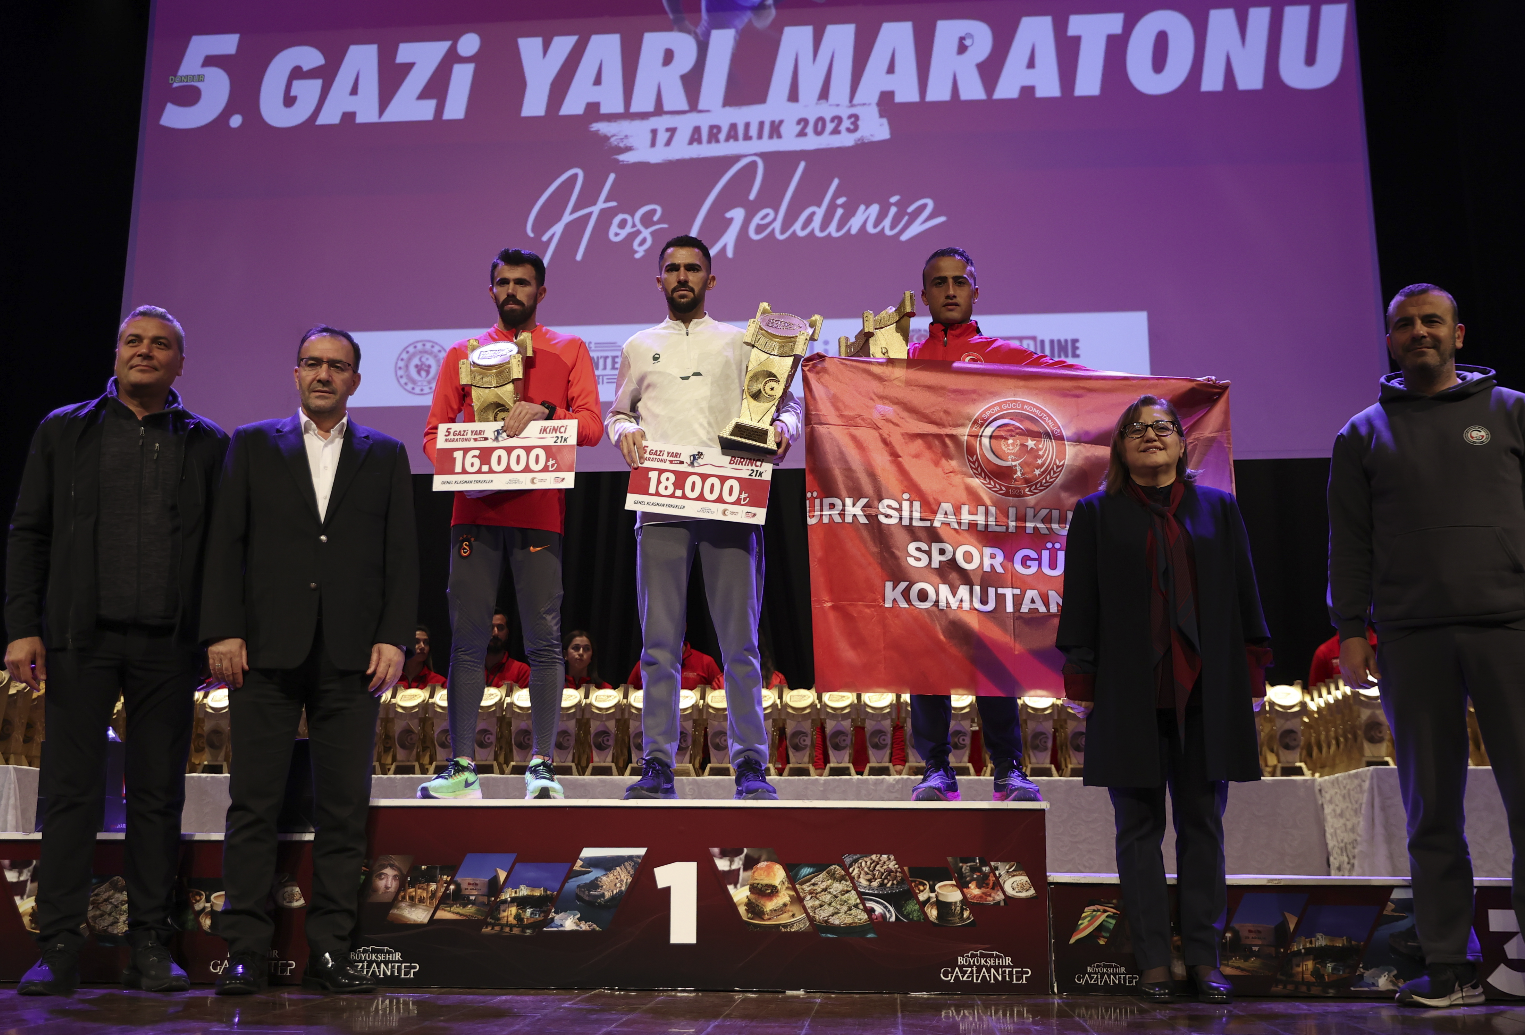 Gaziantep’te düzenlenen 5. Gazi Yarı Maratonu tamamlandı